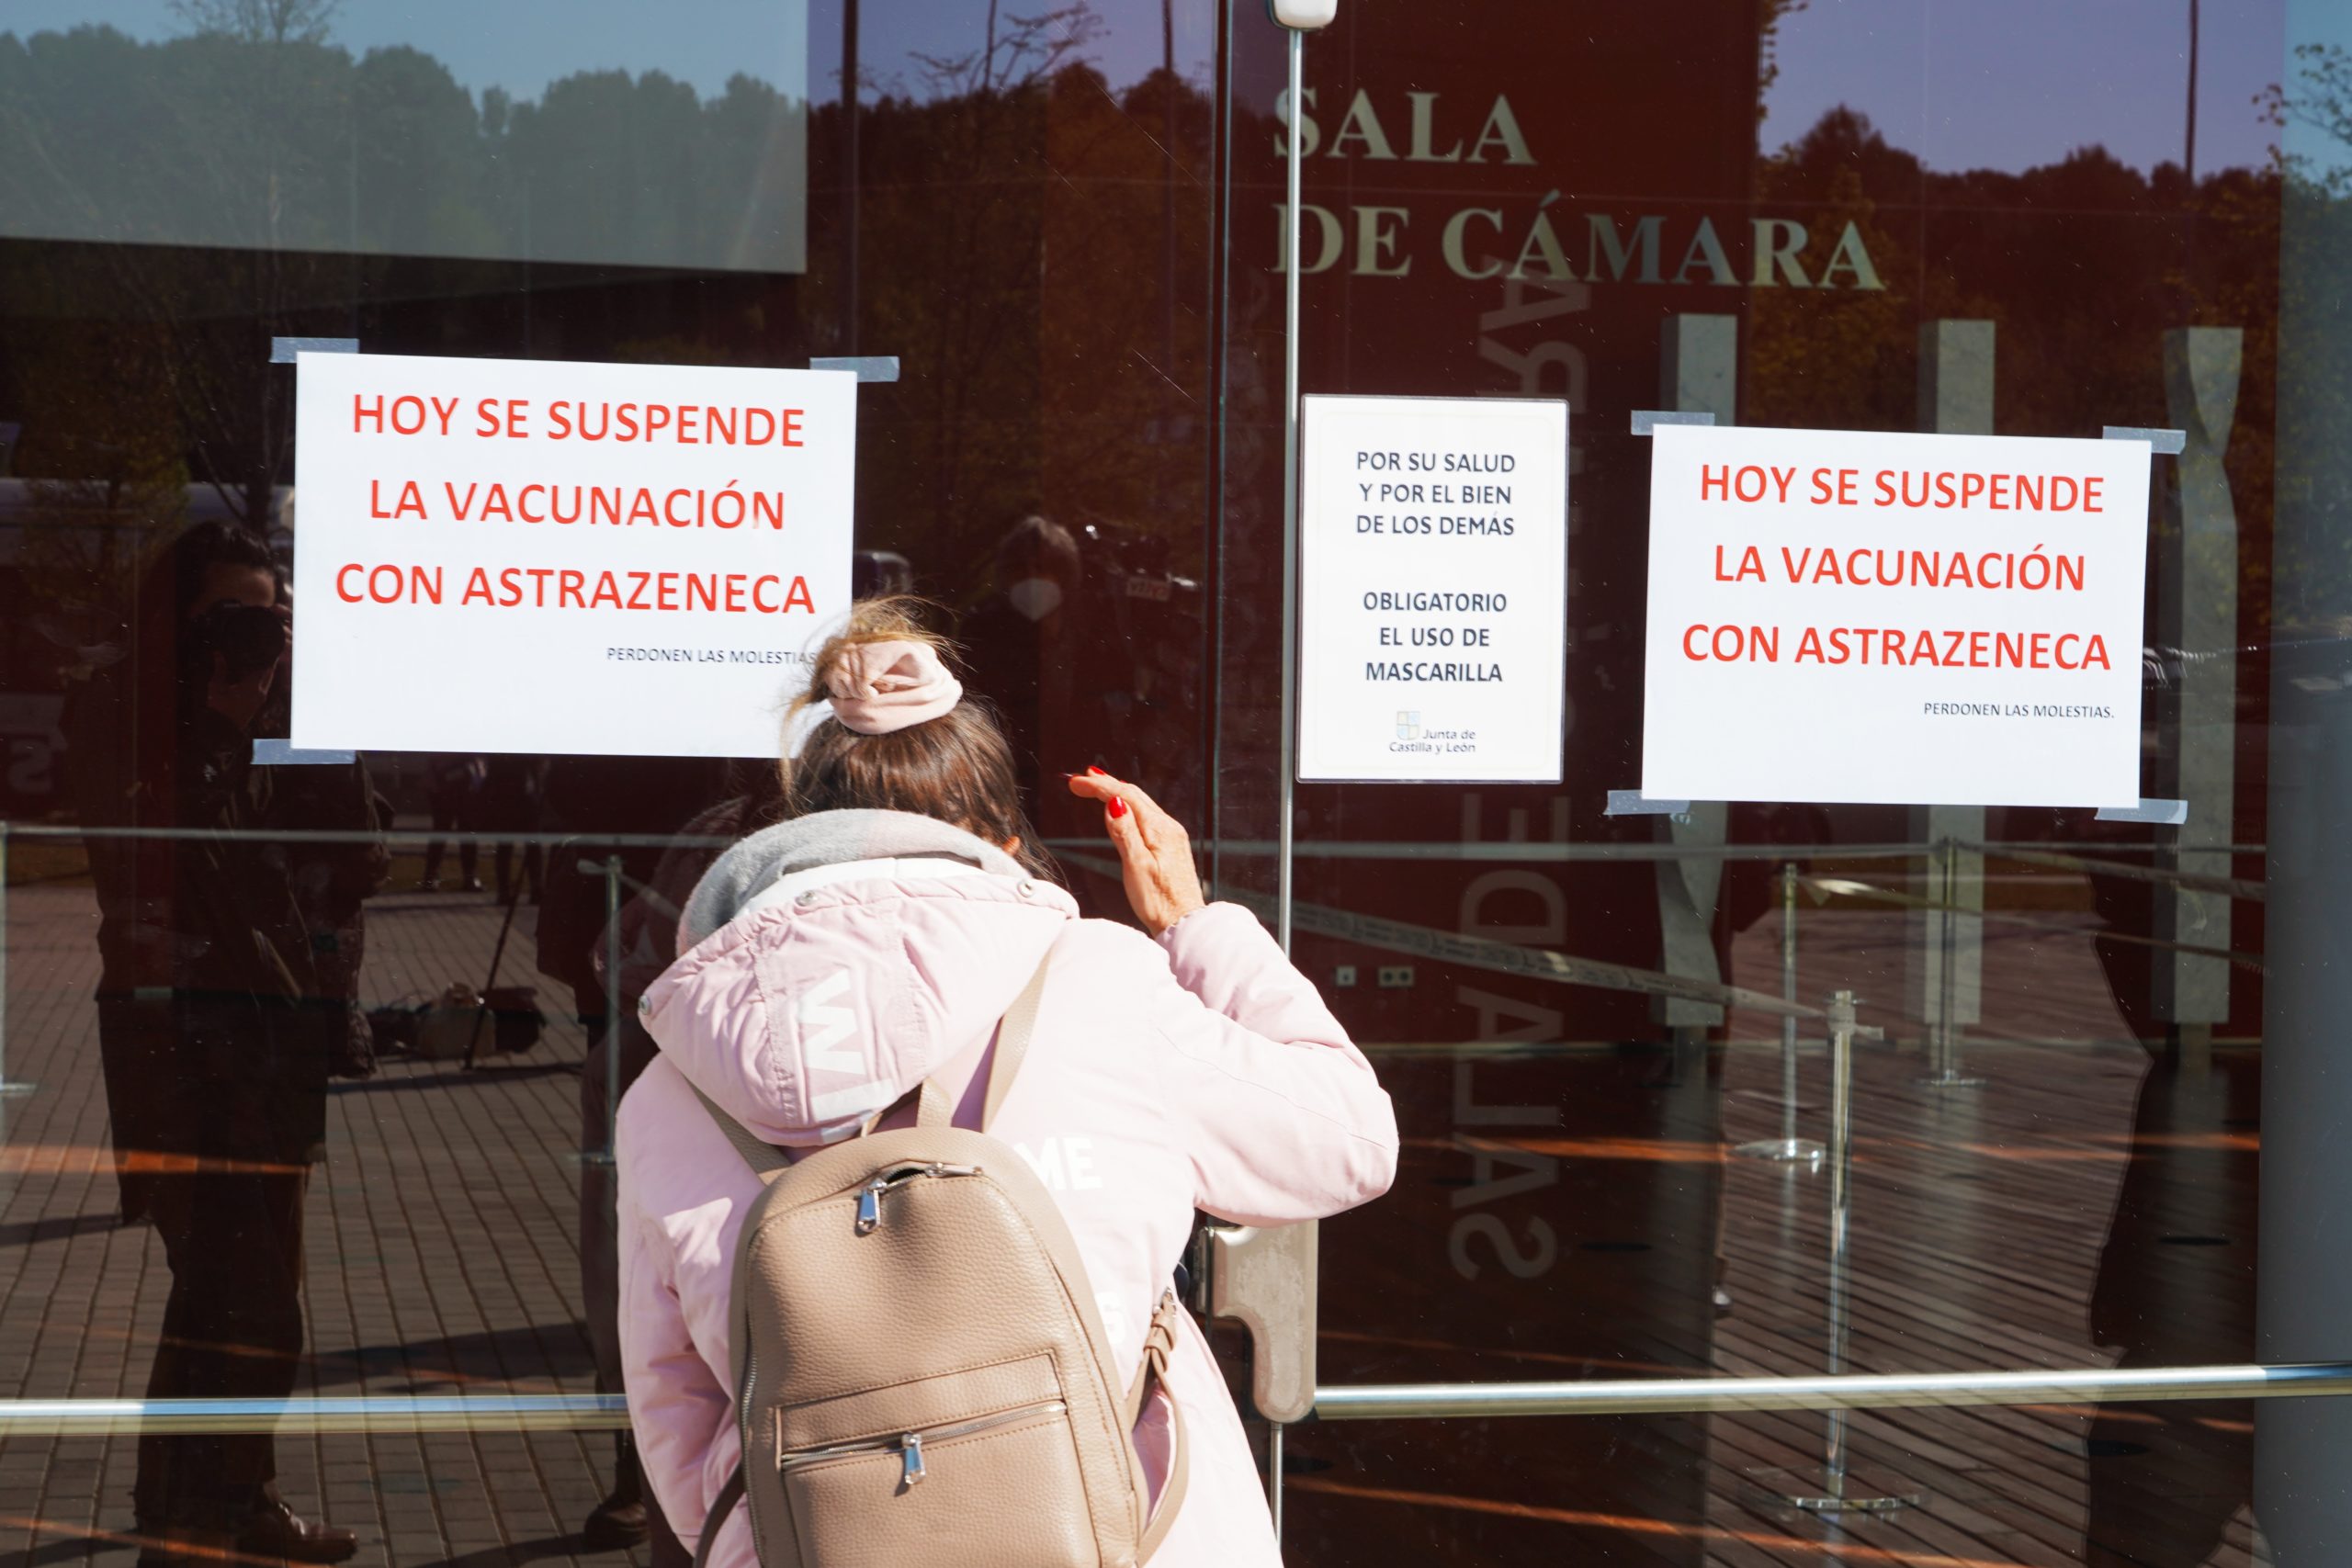 La Comunidad reanudará la vacunación con Astra Zeneca sólo a mayores de 60 años